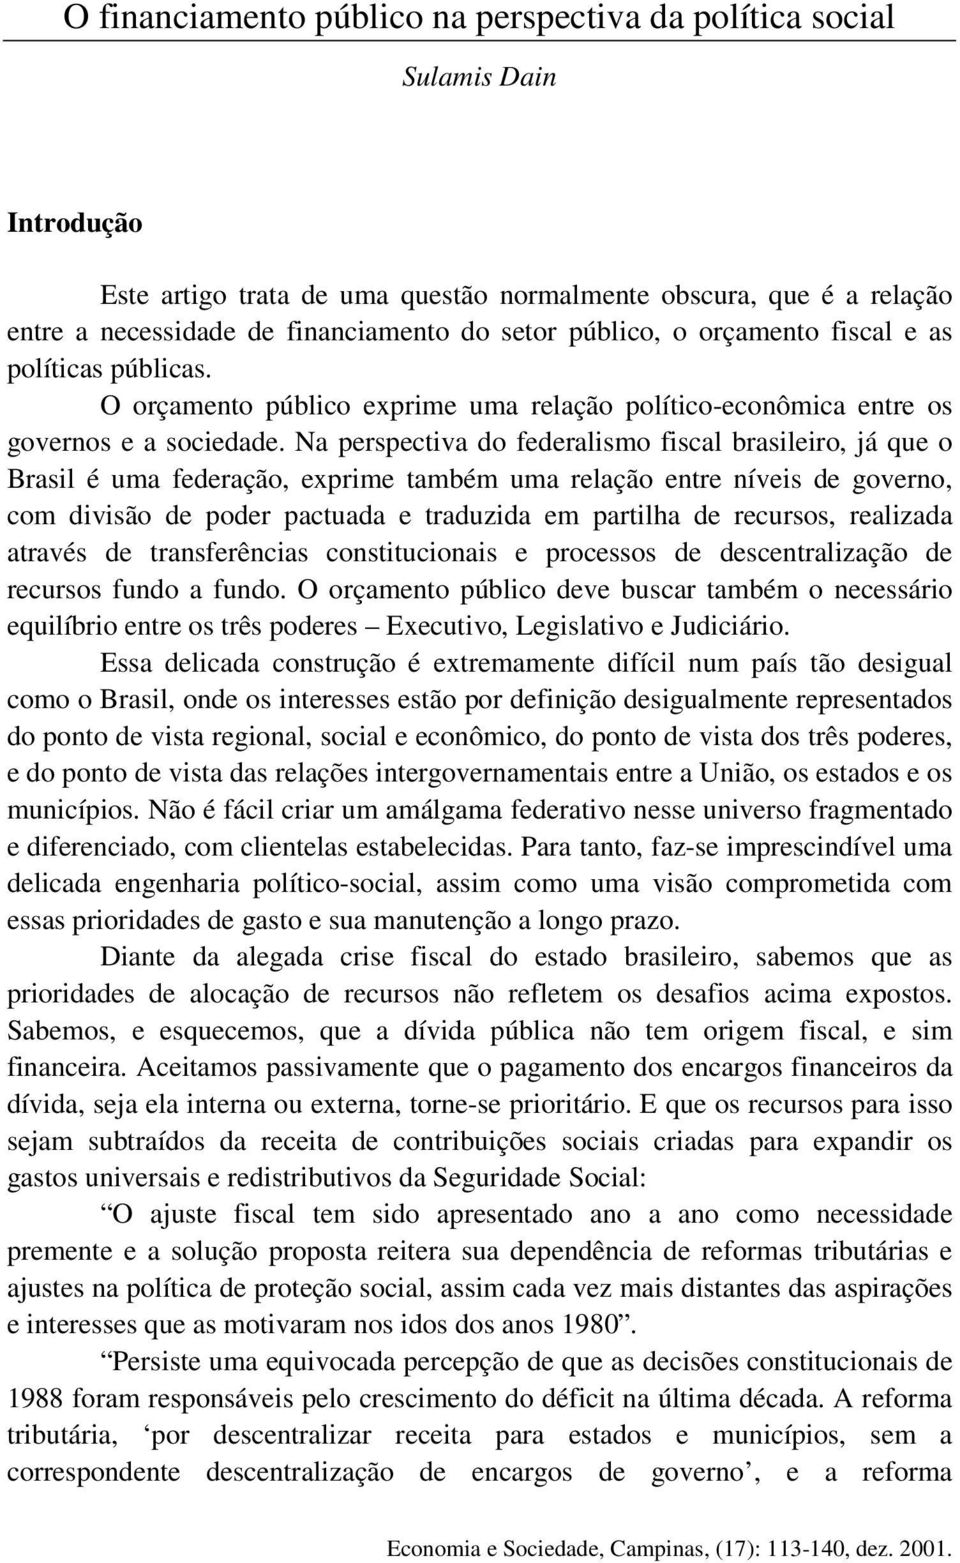 Na perspectiva do federalismo fiscal brasileiro, já que o Brasil é uma federação, exprime também uma relação entre níveis de governo, com divisão de poder pactuada e traduzida em partilha de